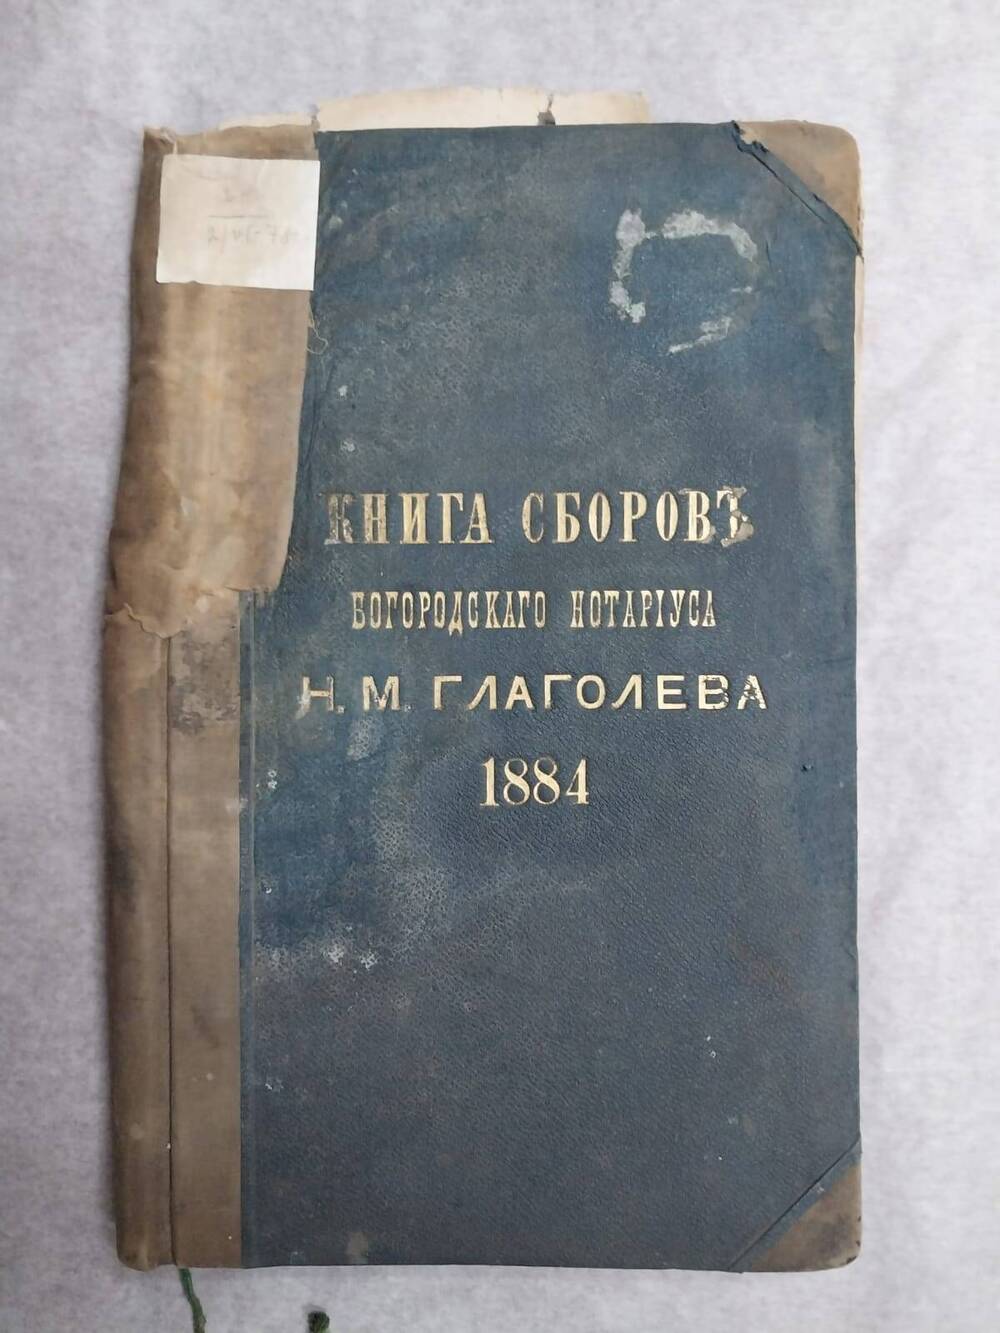 Книга сборов Богородского нотариуса Н. М. Глаголева, 1884 года.